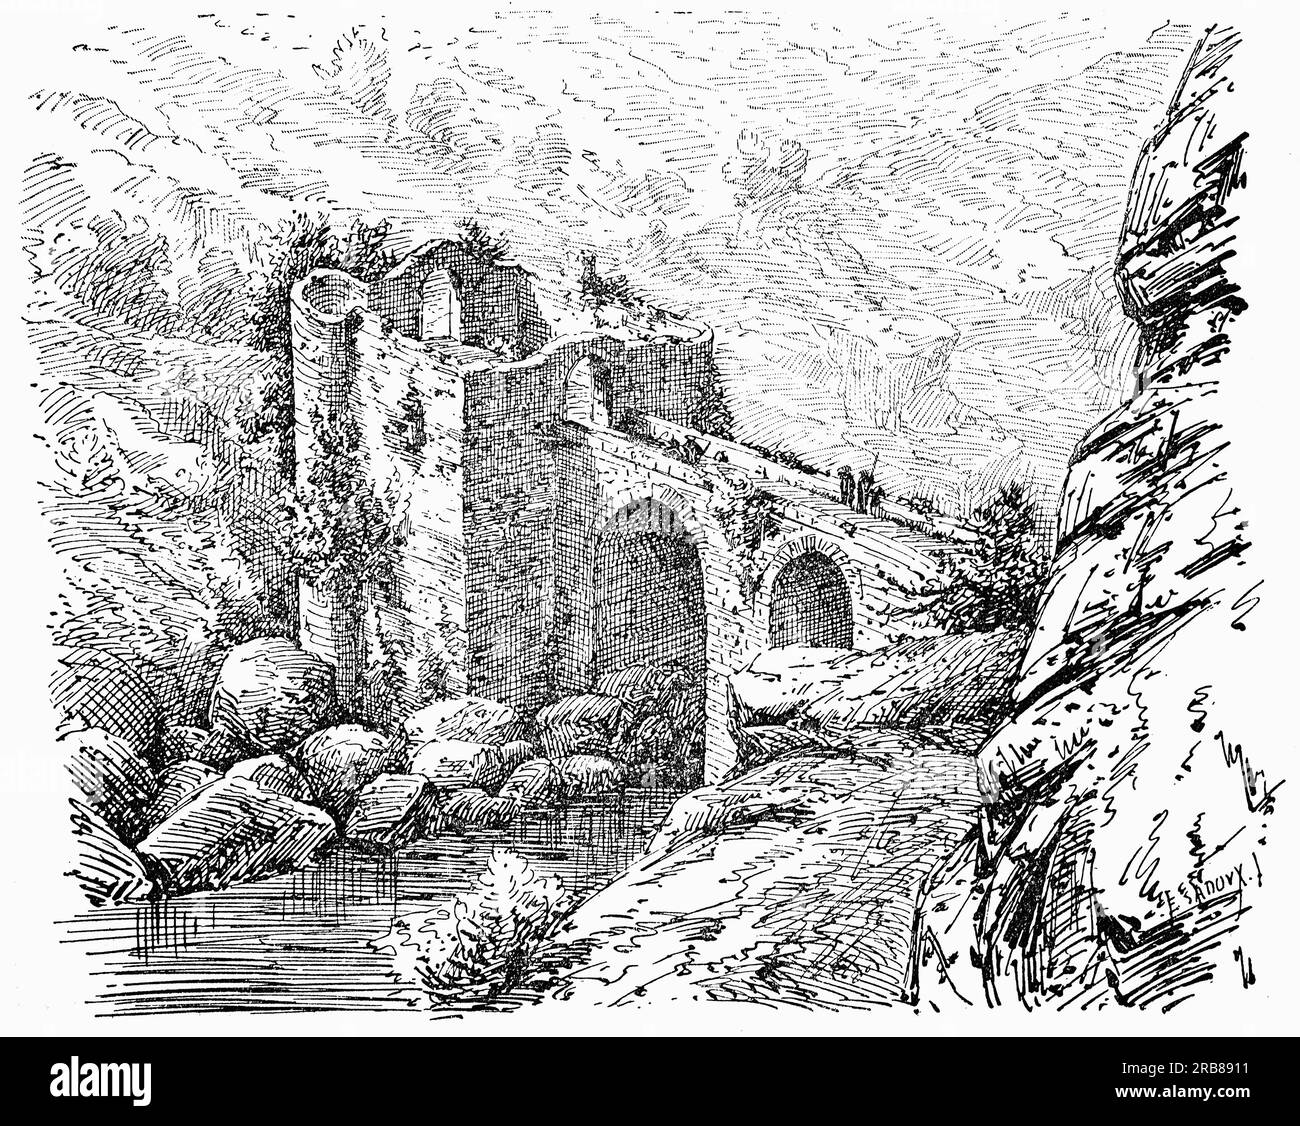 Une illustration de la fin du 19e siècle du Pont Saint-Antoine, alias le Pont du Diable, sur l'Ariège situé dans le département de l'Ariège dans le sud-ouest de la France, entre Foix et Tarascon -sur-Ariège. Cru dans les temps précédents pour être construit au 13e siècle, il a été construit en fait en 1836. Banque D'Images